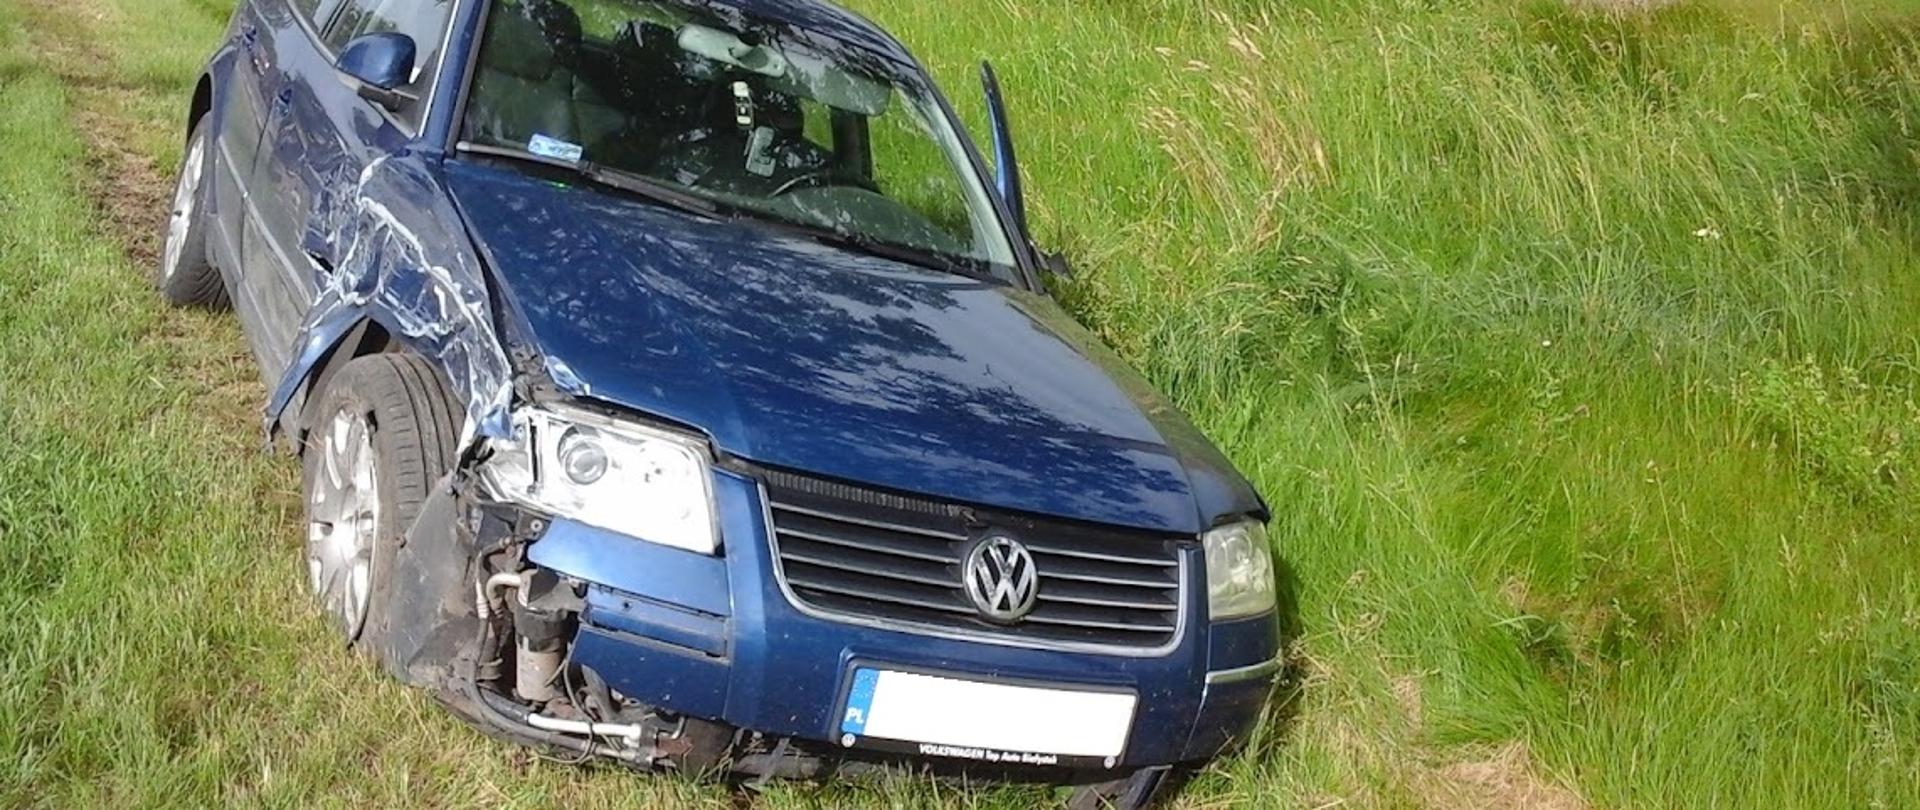 Samochód osobowy marki Volkswagen stojący po zderzeniu z innym pojazdem w rowie. Auto ma uszkodzone przednie lewe nadkole oraz drzwi.